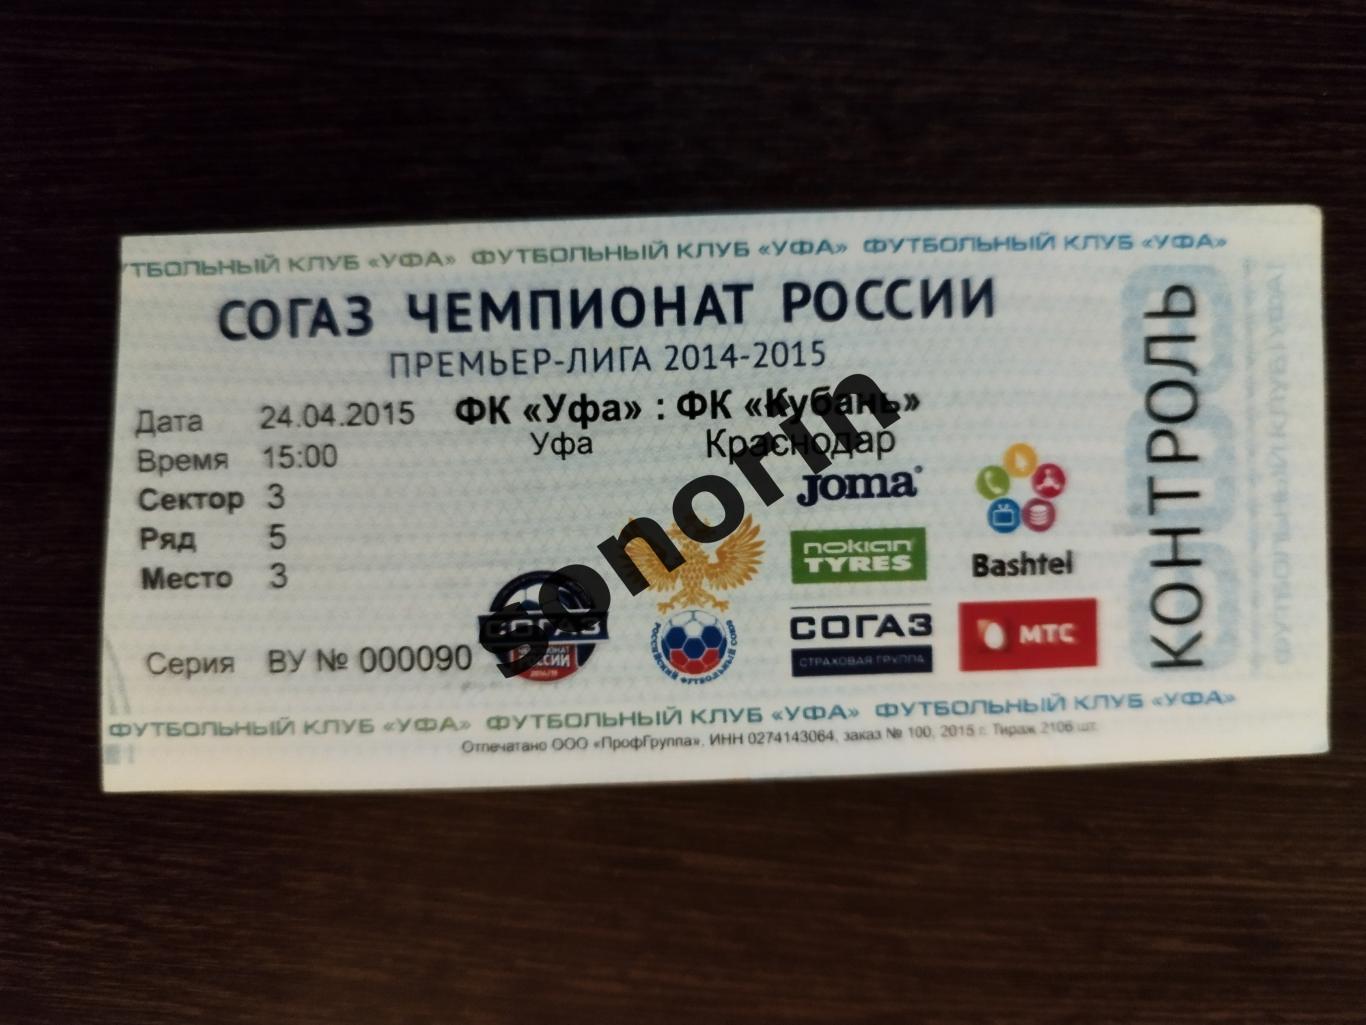 ФК Уфа - Кубань (Краснодар) 2014/2015